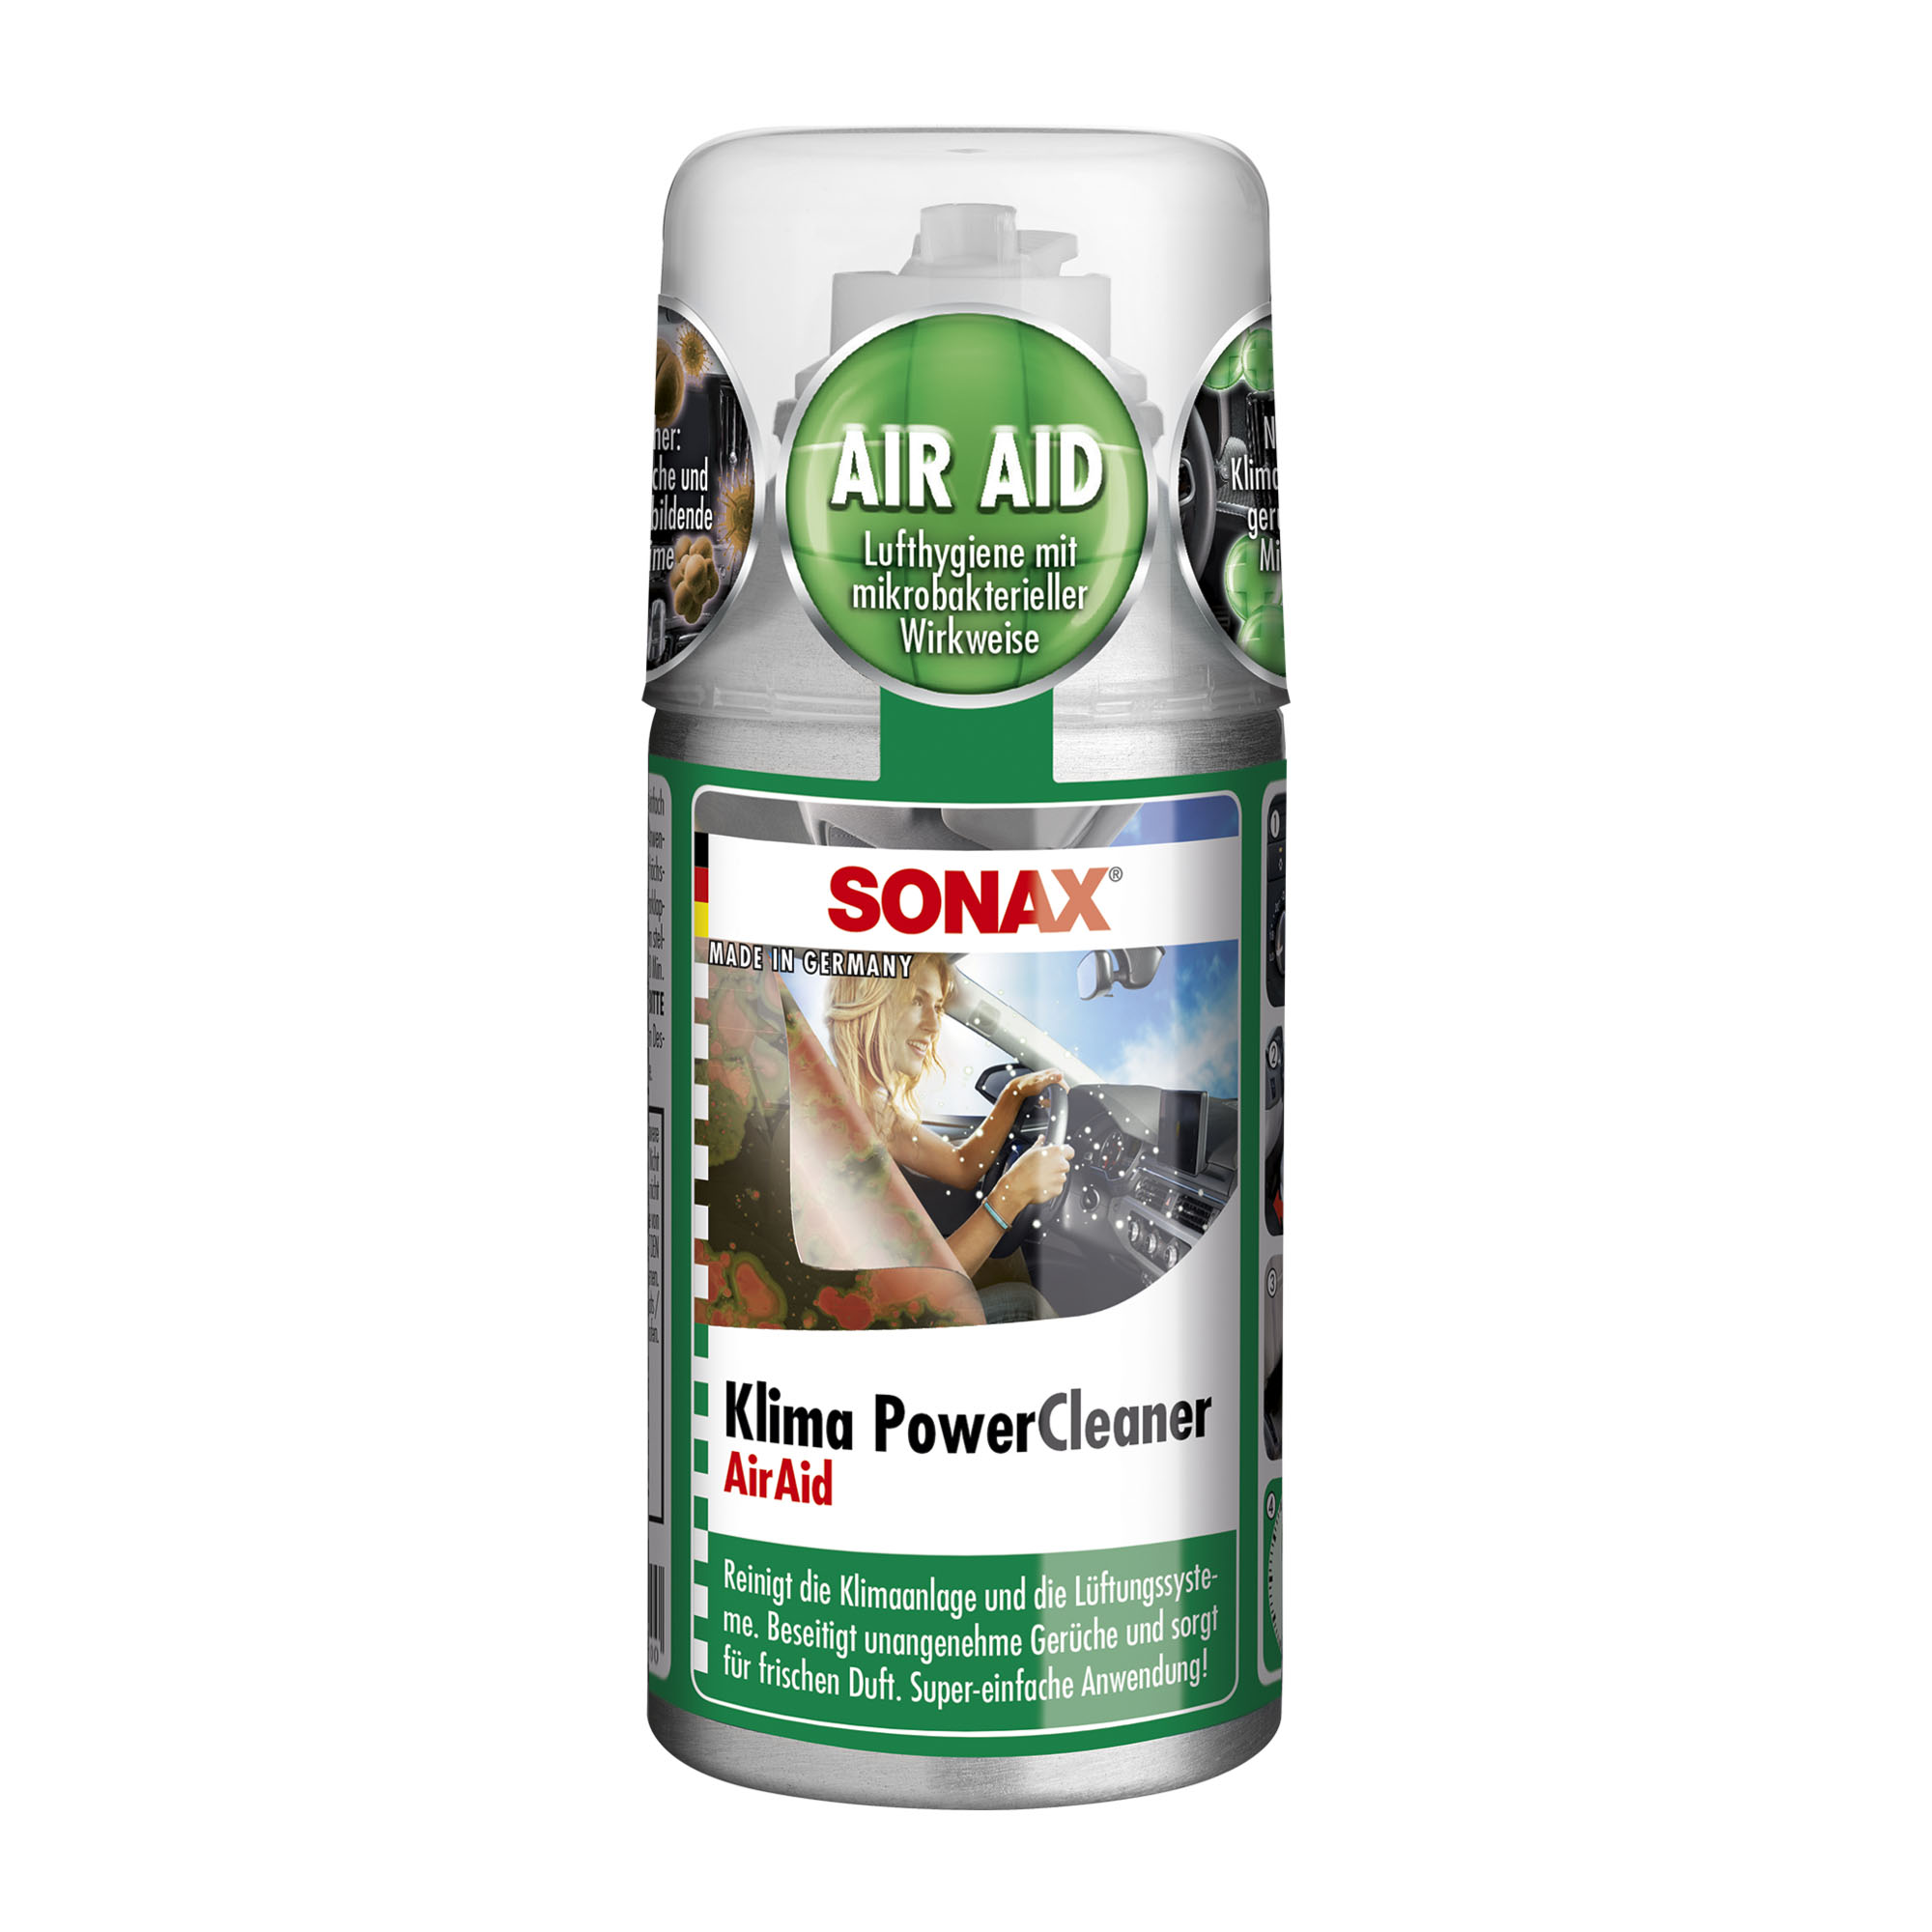 Sonax Clean A/C Air Aid